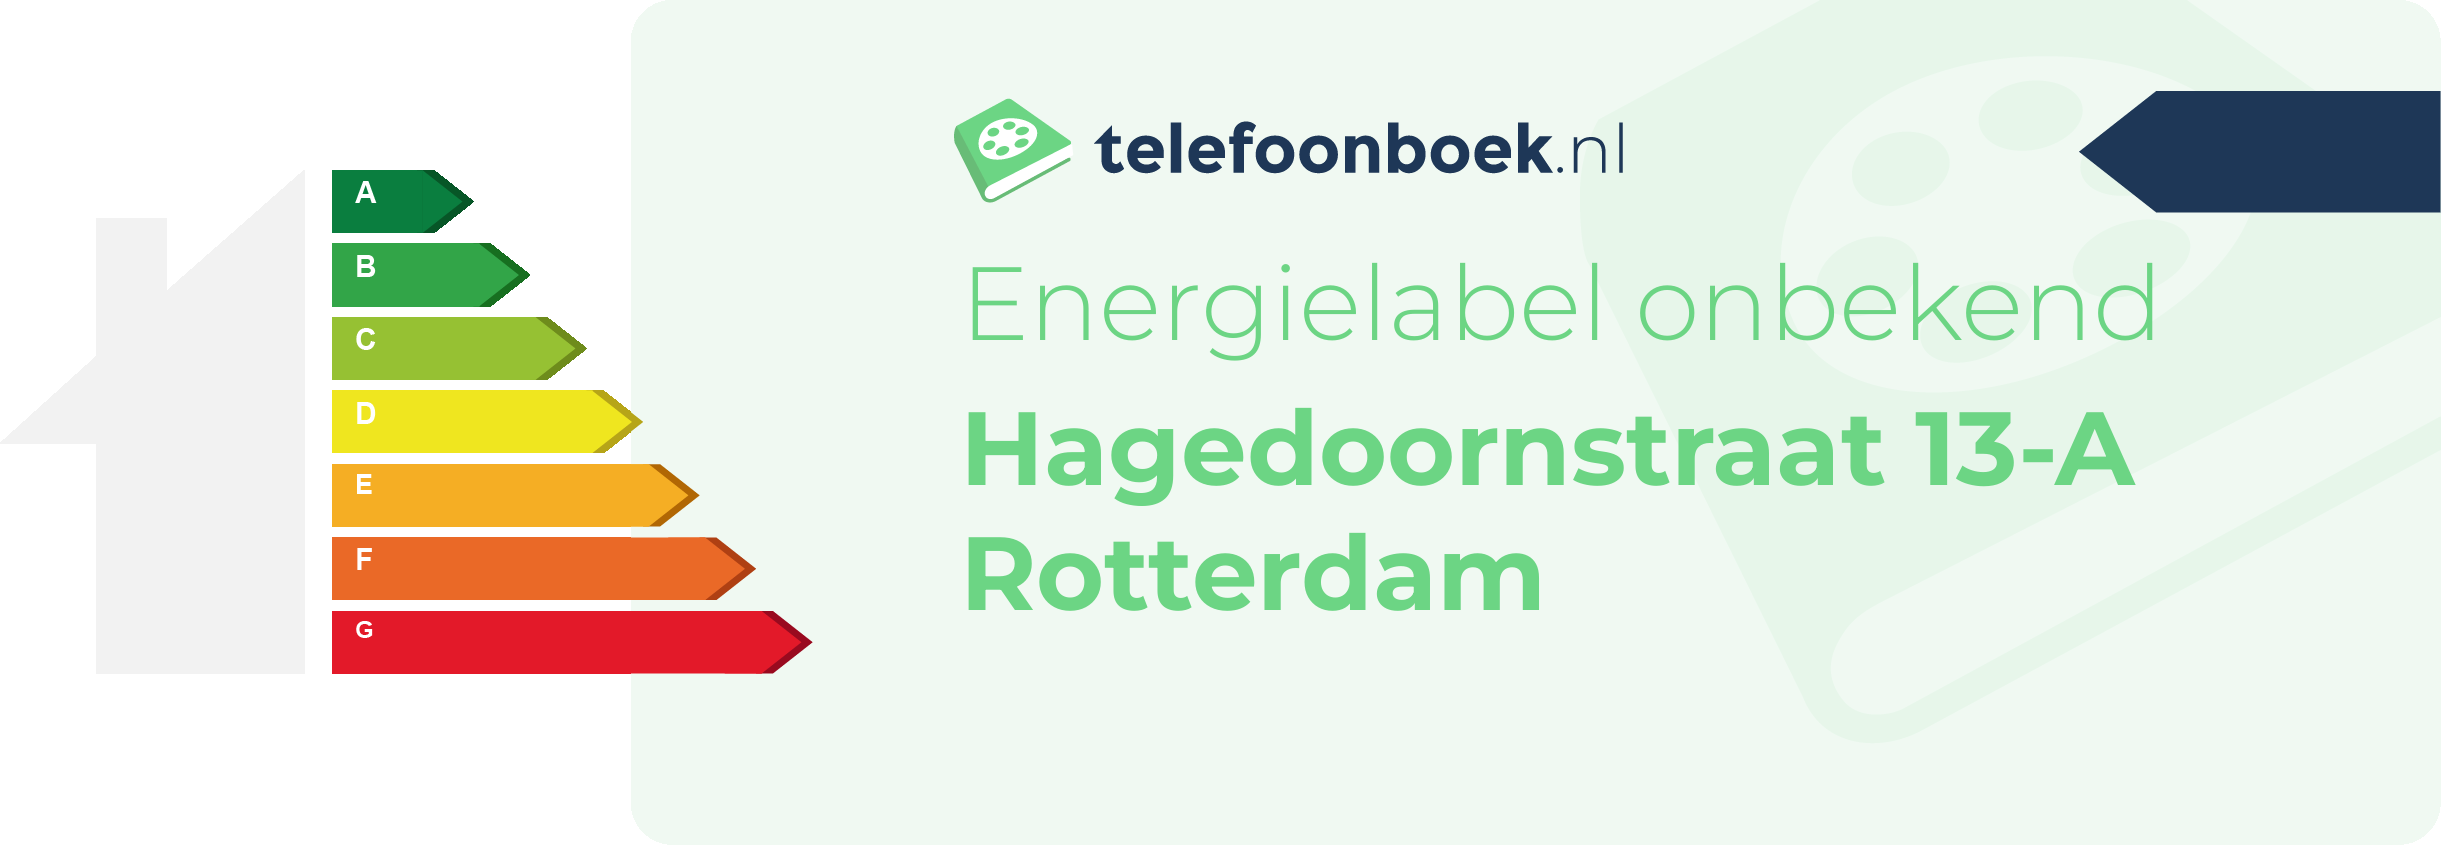 Energielabel Hagedoornstraat 13-A Rotterdam